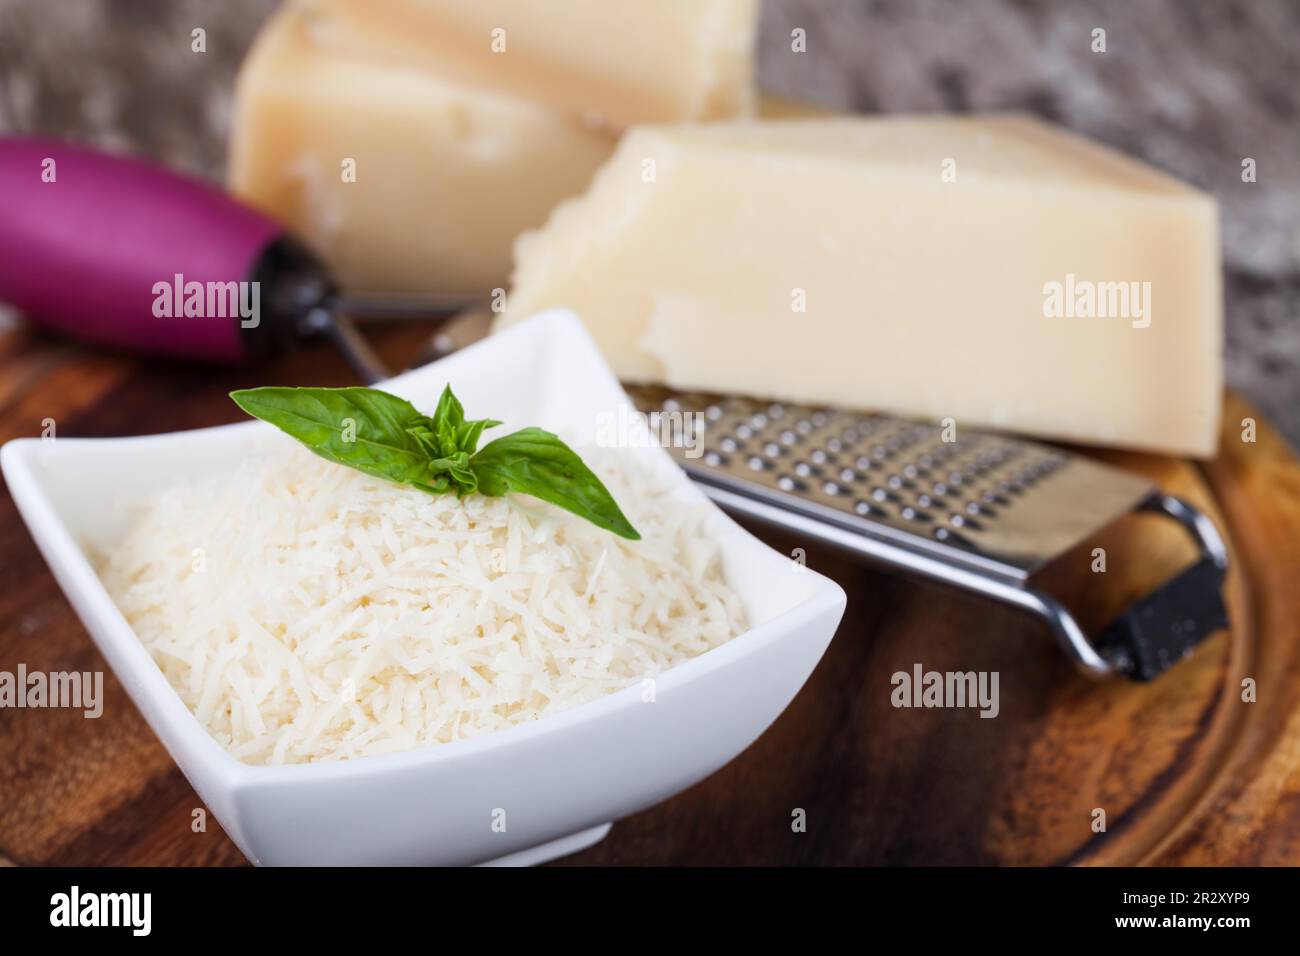 Pezzo di formaggio Parmigiano con grattugia isolato su bianco Foto stock -  Alamy